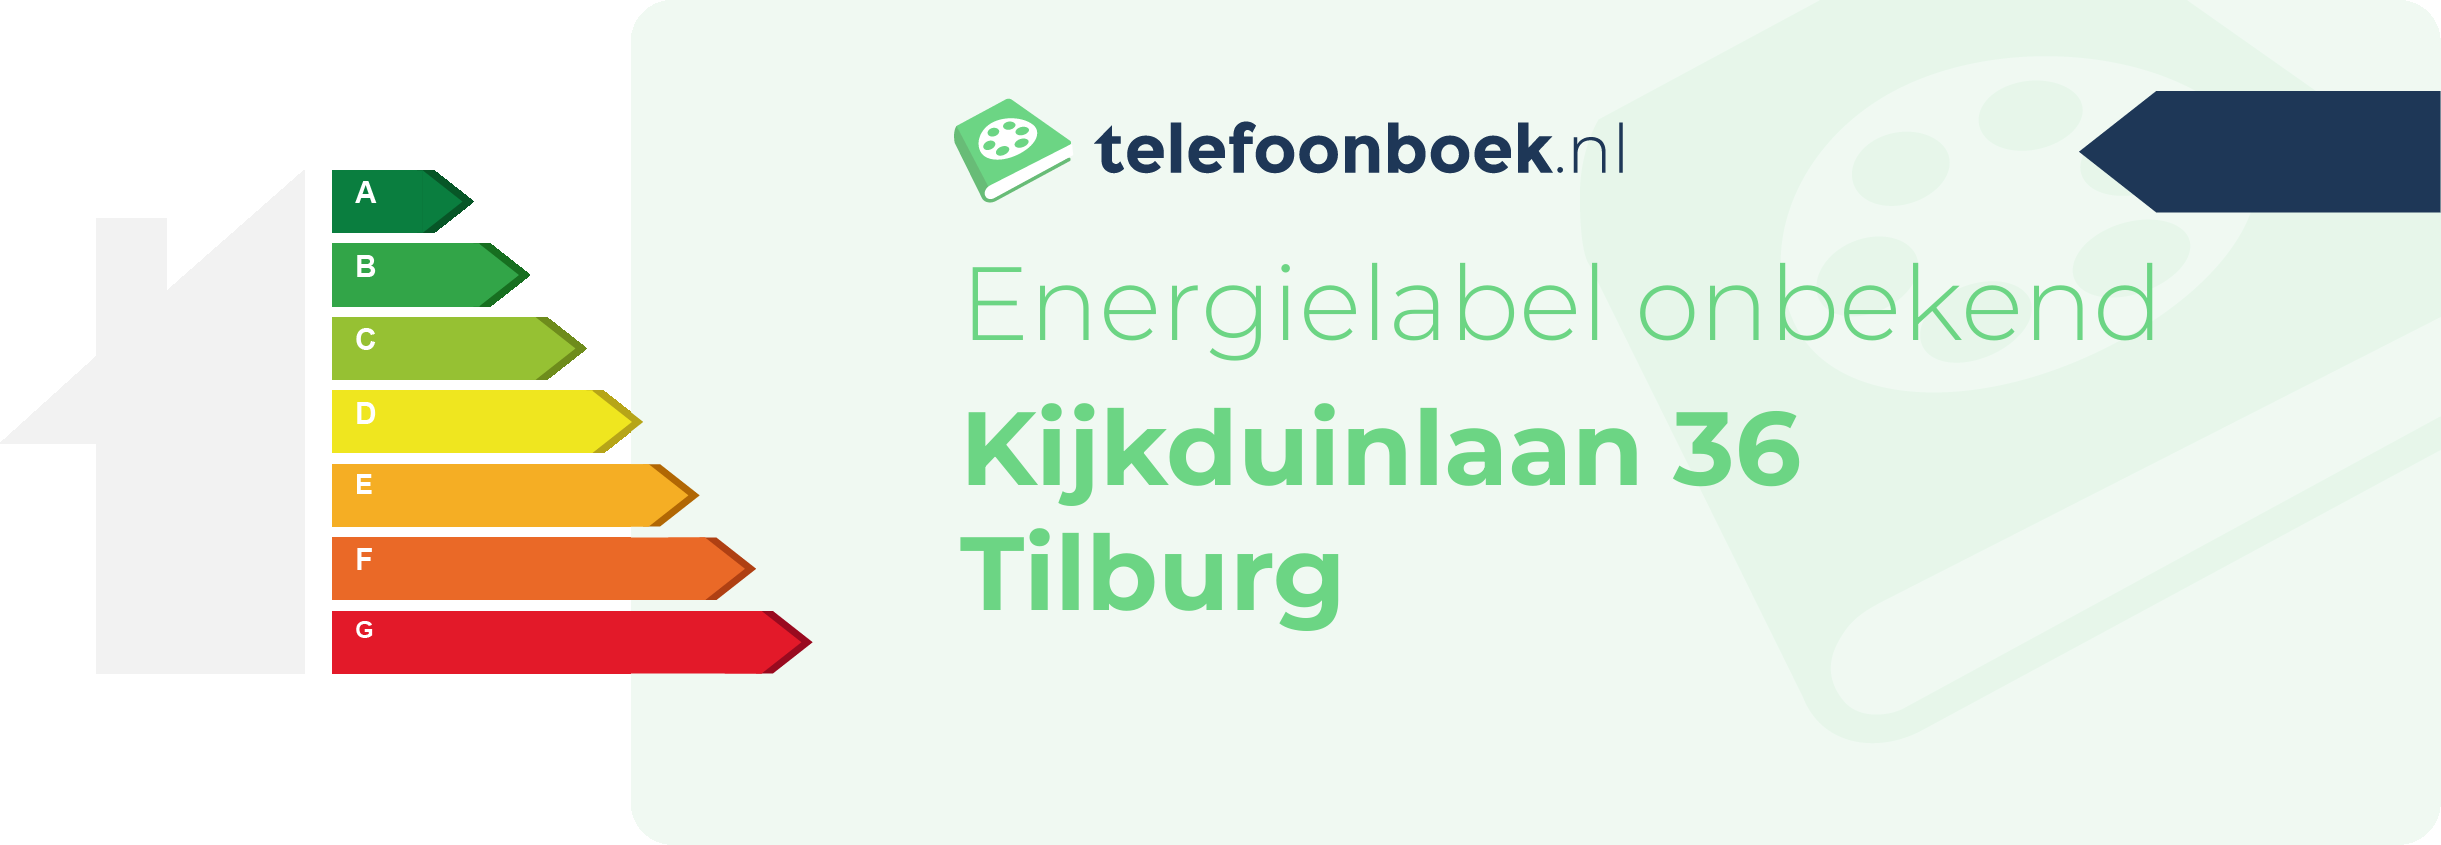 Energielabel Kijkduinlaan 36 Tilburg